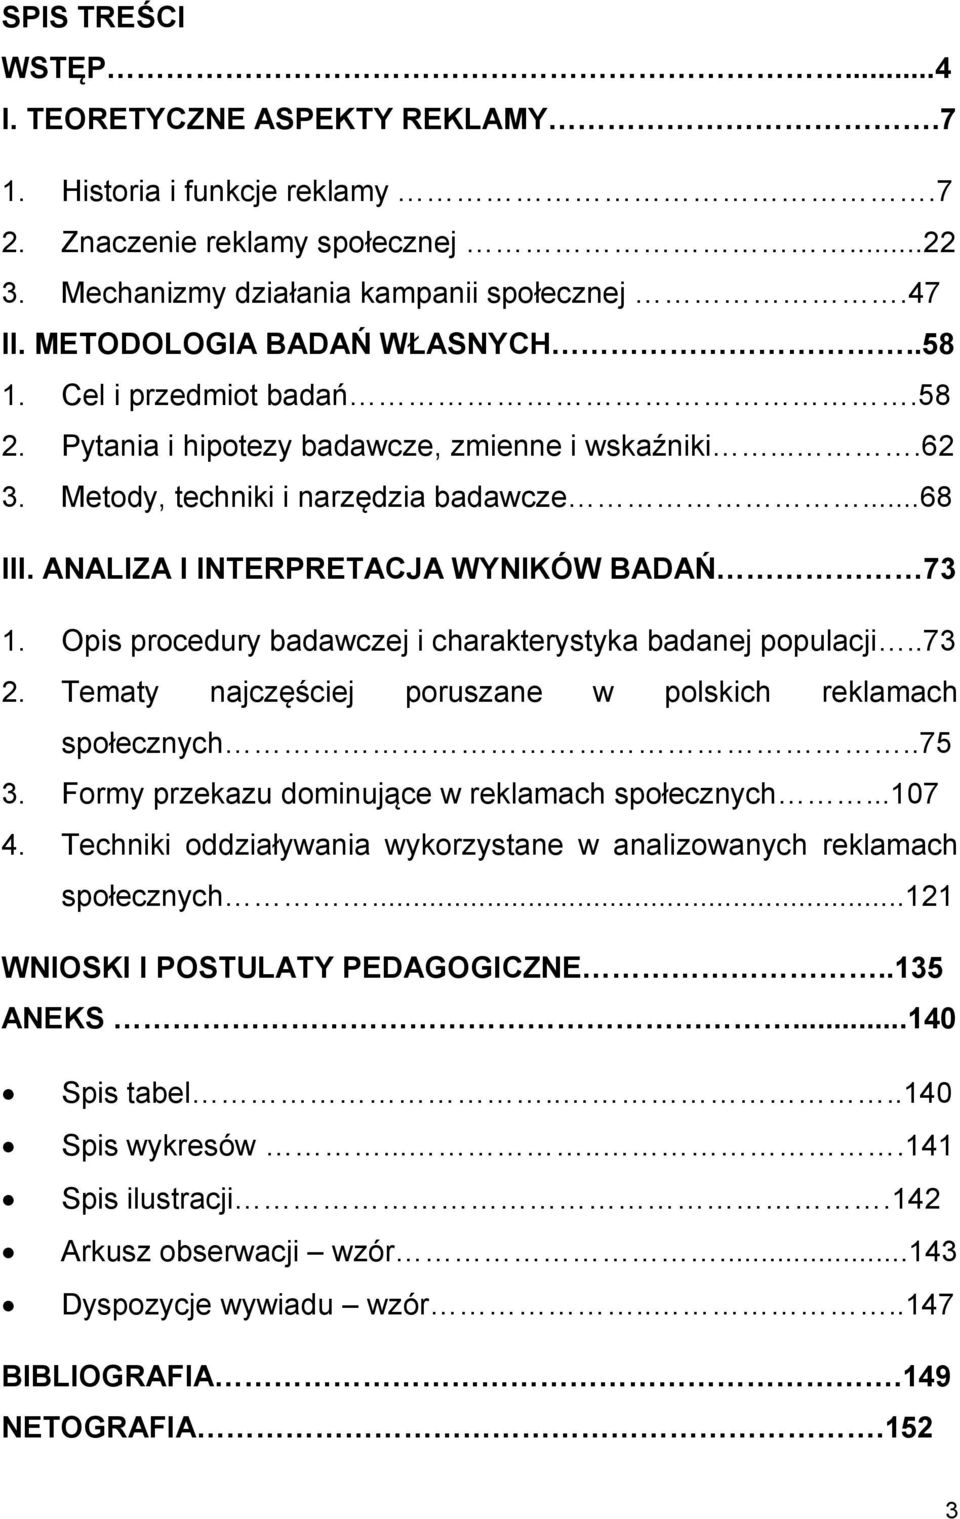 ANALIZA I INTERPRETACJA WYNIKÓW BADAŃ 73 1. Opis procedury badawczej i charakterystyka badanej populacji..73 2. Tematy najczęściej poruszane w polskich reklamach społecznych..75 3.